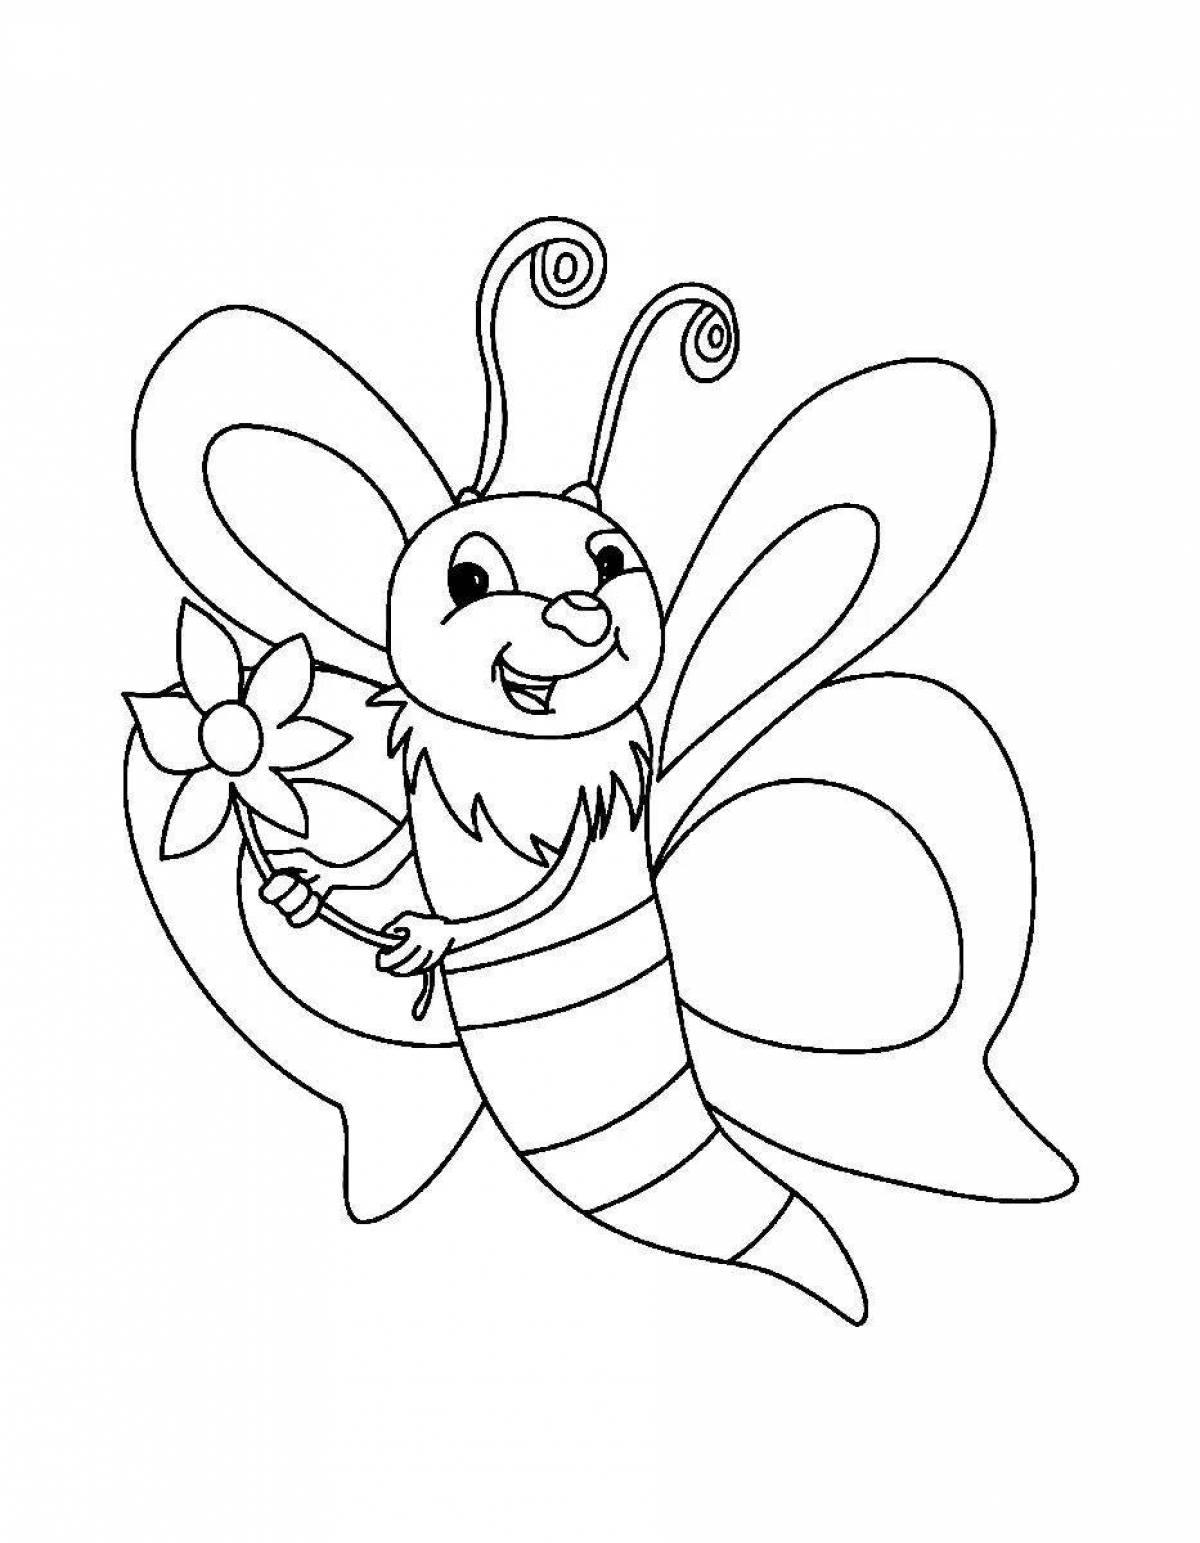 Изысканная раскраска пчелы для детей